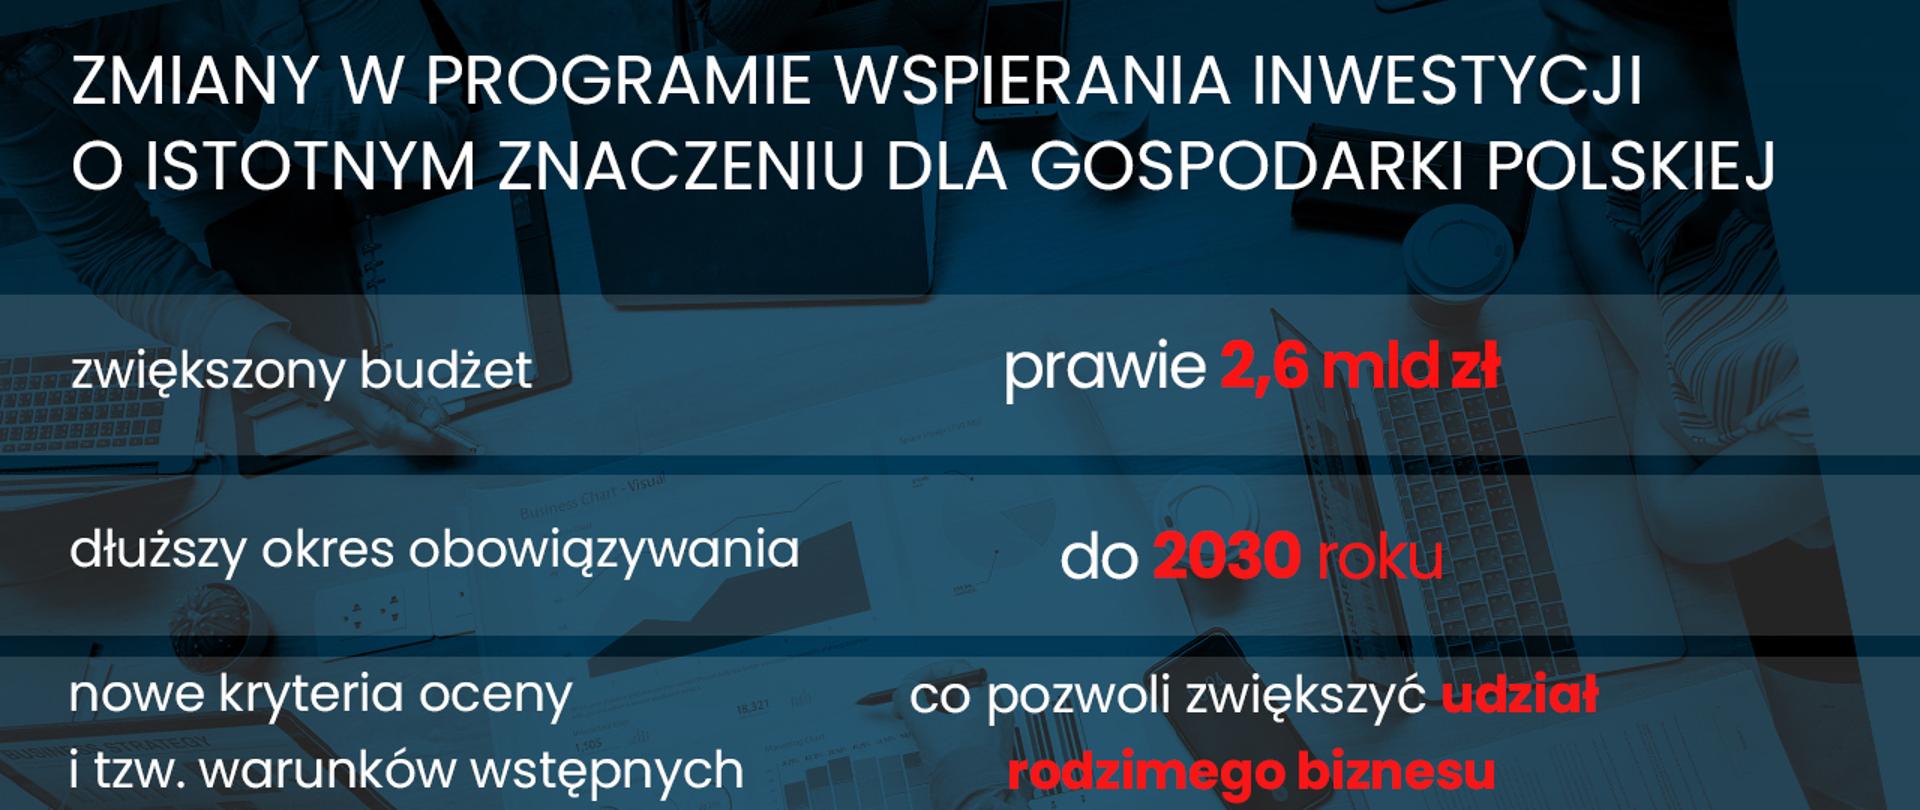 Infografika dot zmian w Programie wspierania inwestycji o istotnym znaczeniu dla gospodarki polskiej na lata 2011-2023